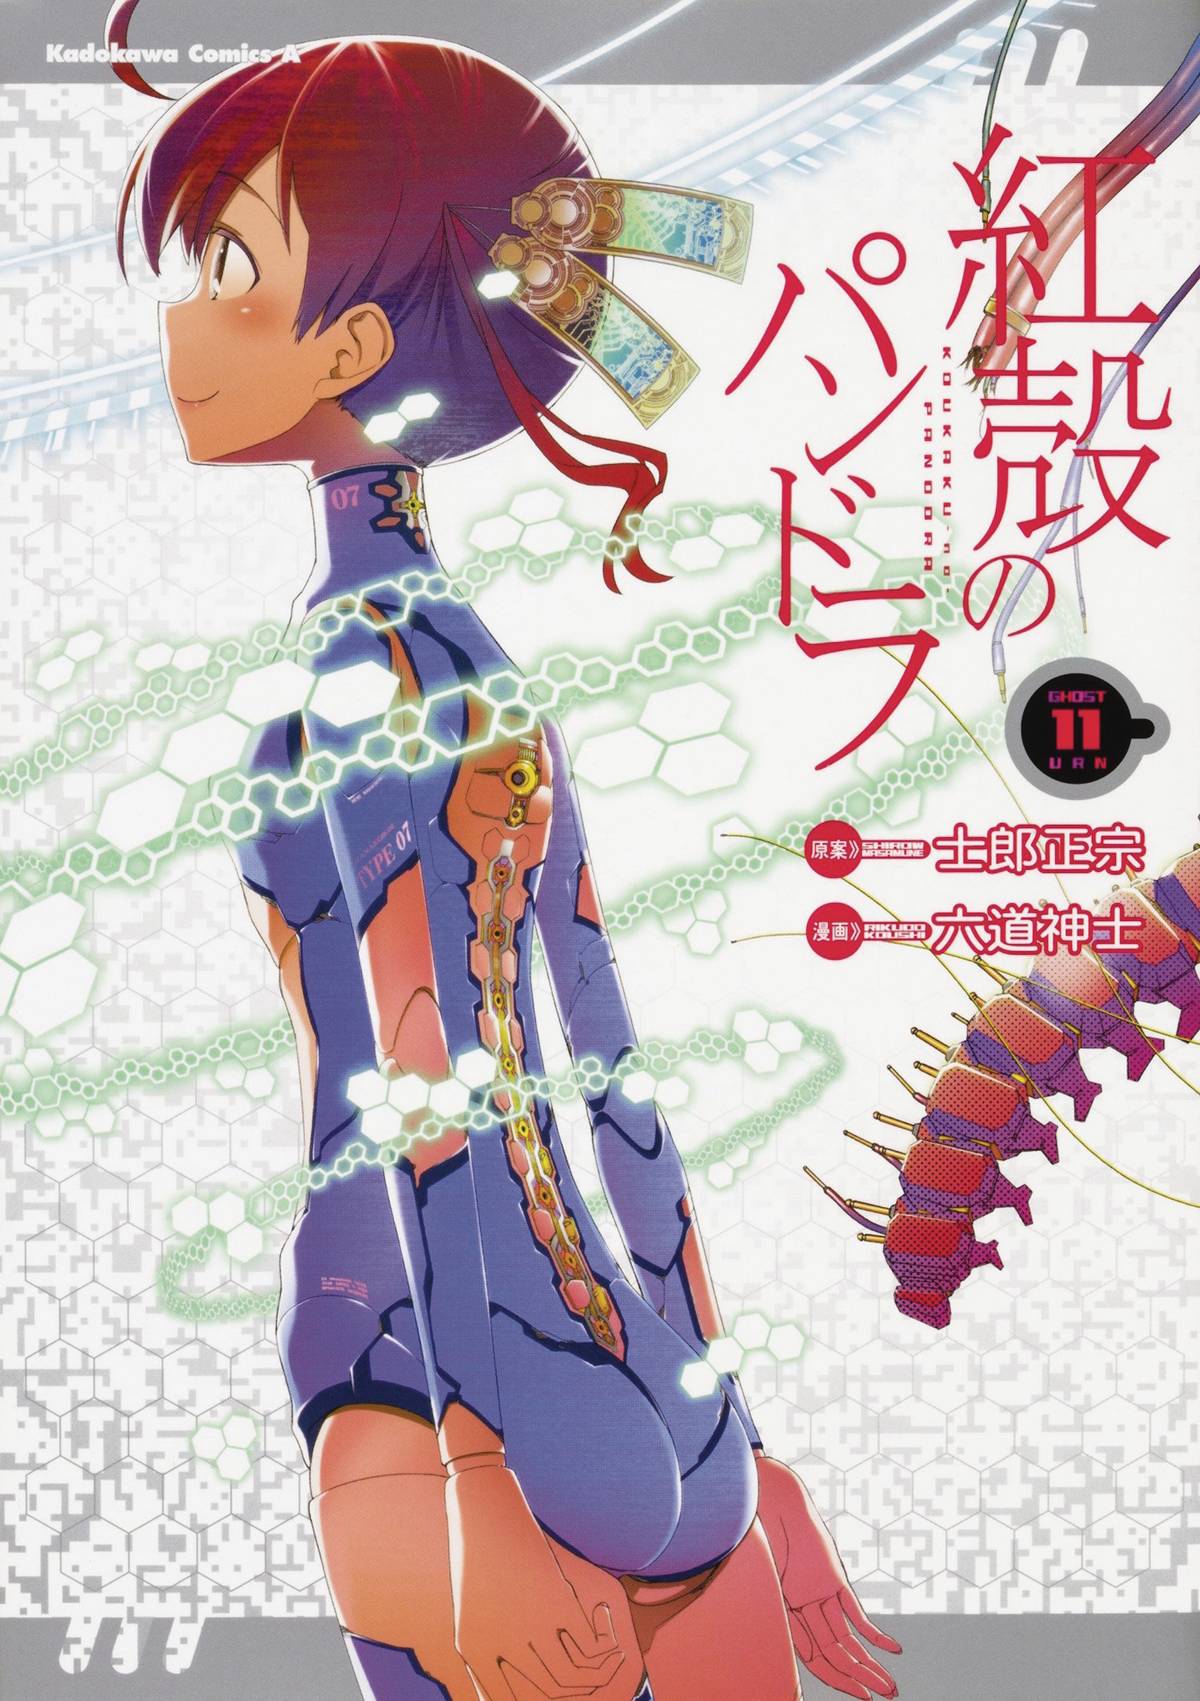 Pandora of the Crimson Shell: Ghost Urn Manga Volume 11 (Mature)